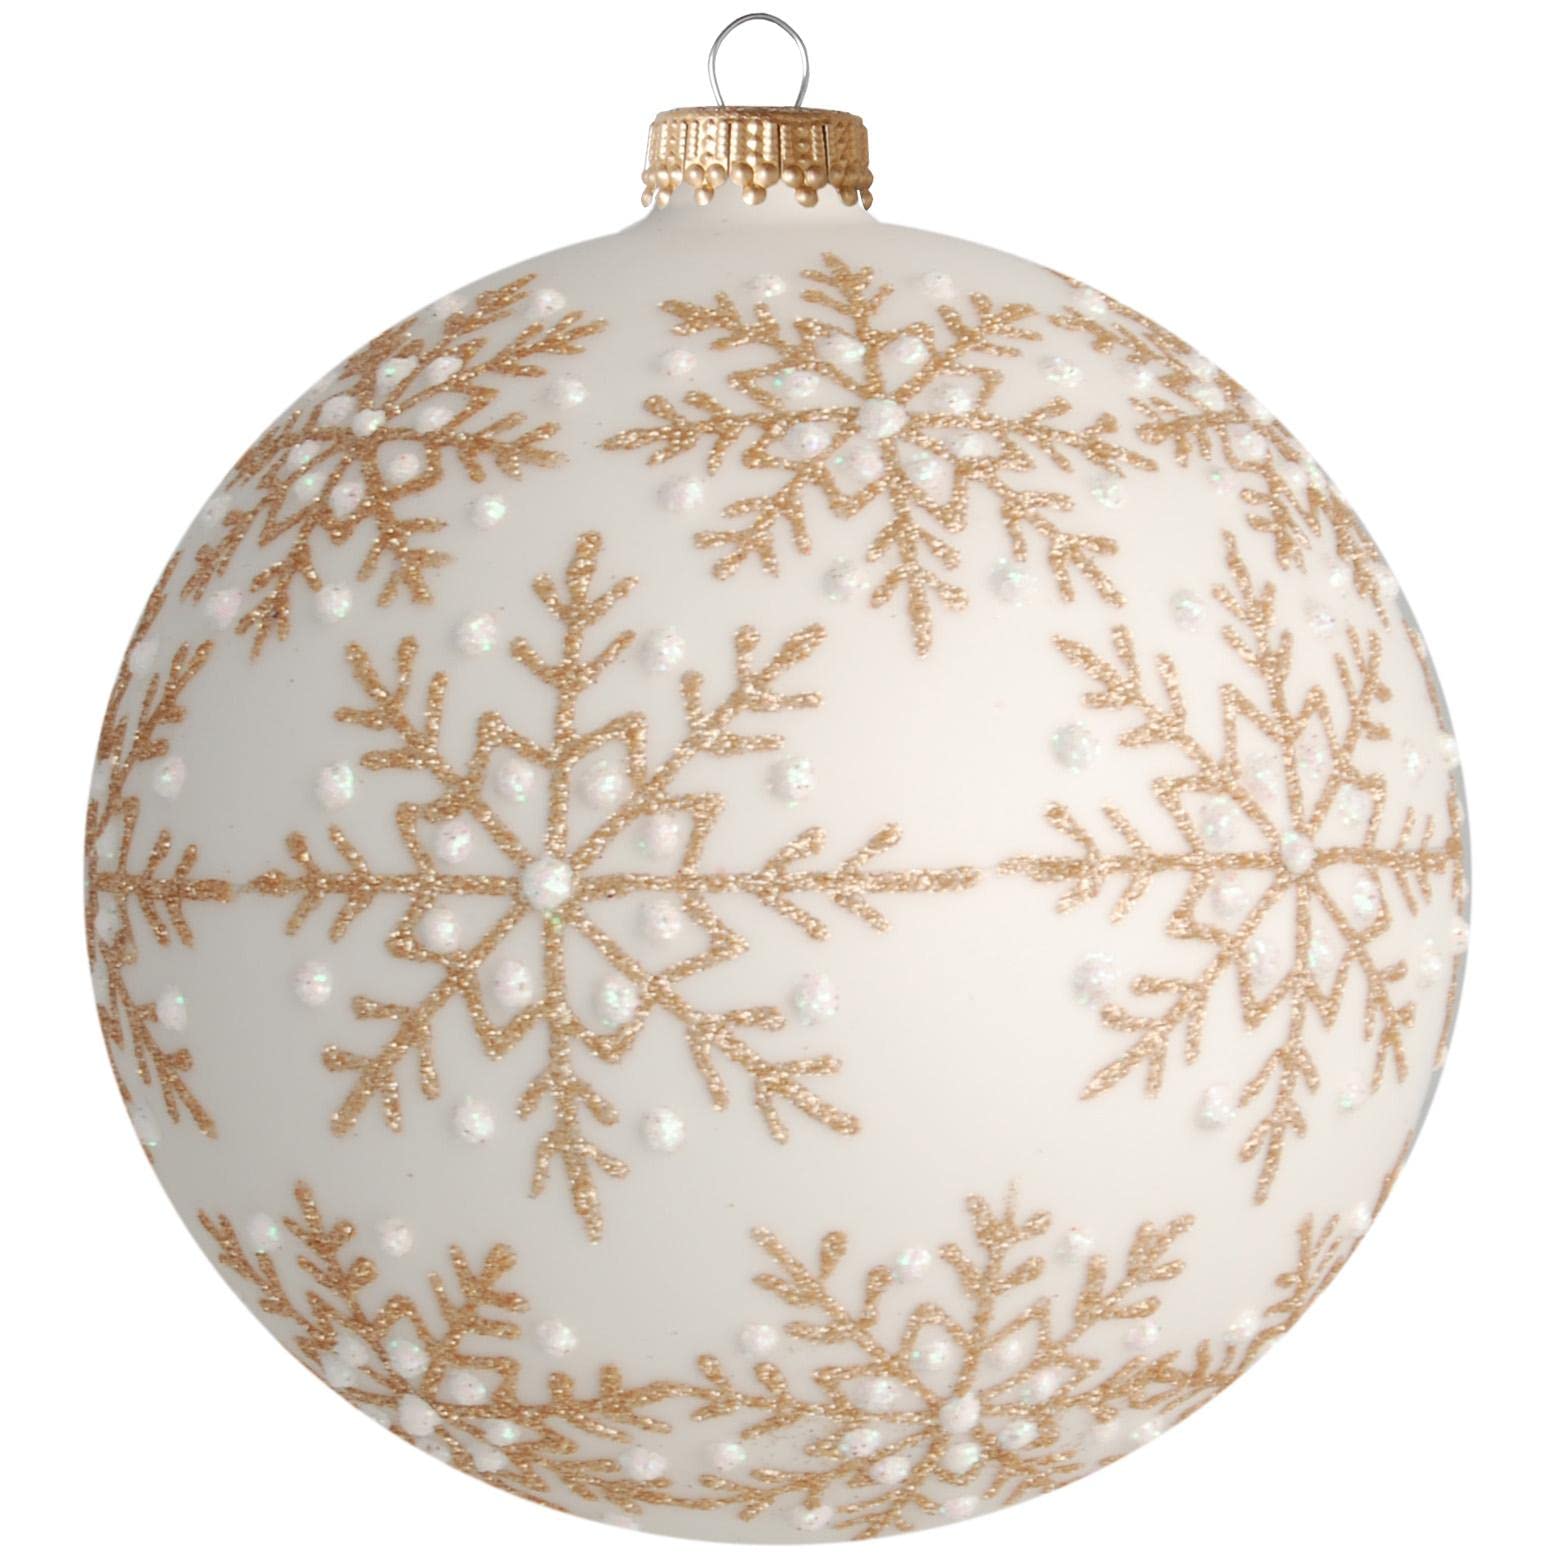 Krebs Glas Lauscha - Weihnachtsdekoration/Christbaumschmuck aus Glas - Weihnachtskugeln - Motiv: Weiß matt mit goldenen Schneekristallen - Größe: 4 mal 10cm